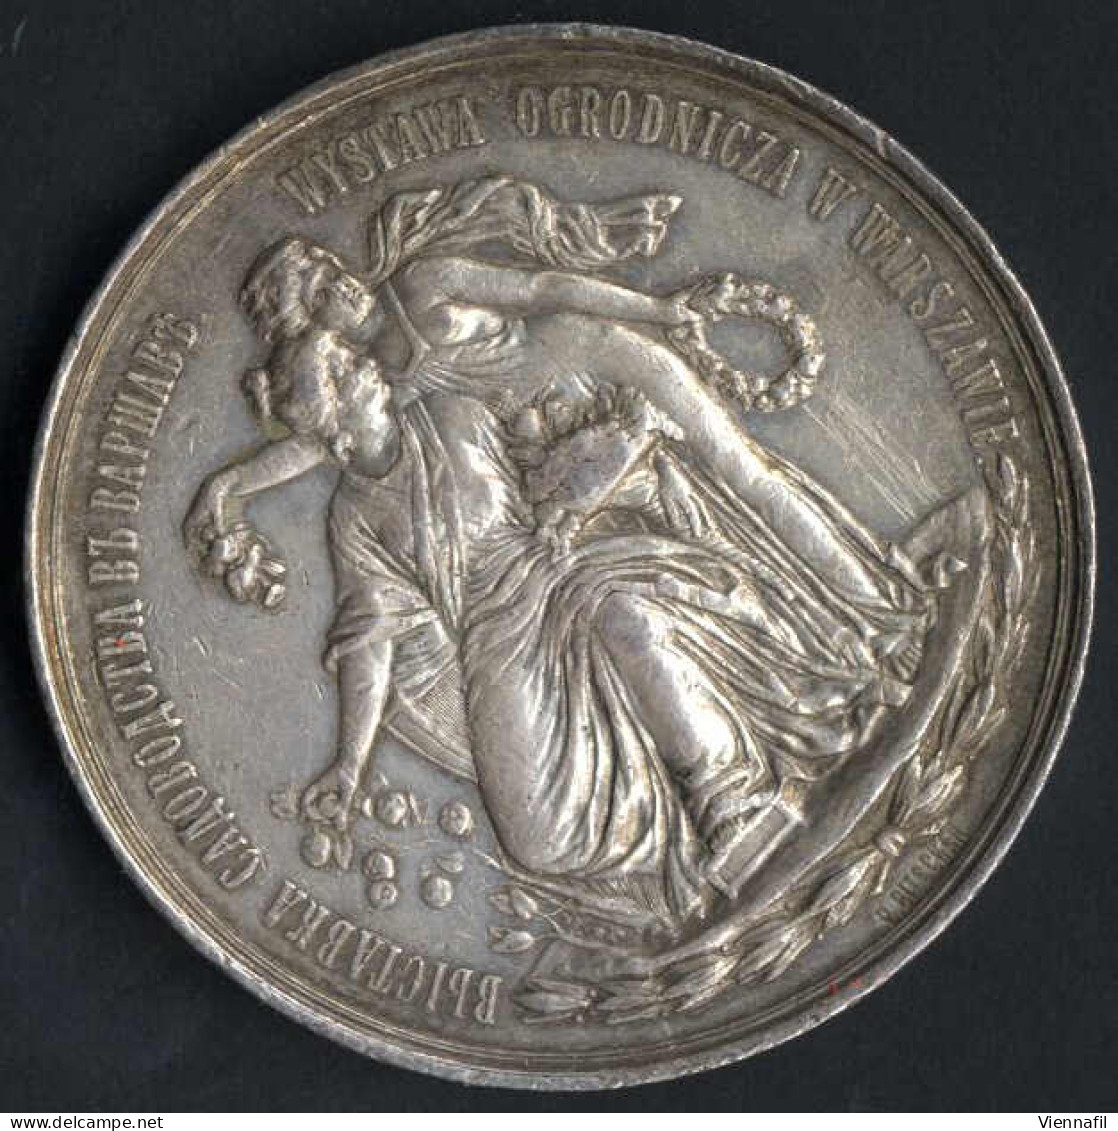 Medaille Der Warschauer Gartenbaugenossenschaft, Gartenbauausstellung Warschau 1895, Silbermedaille Von L. Steinman, Gep - Poland